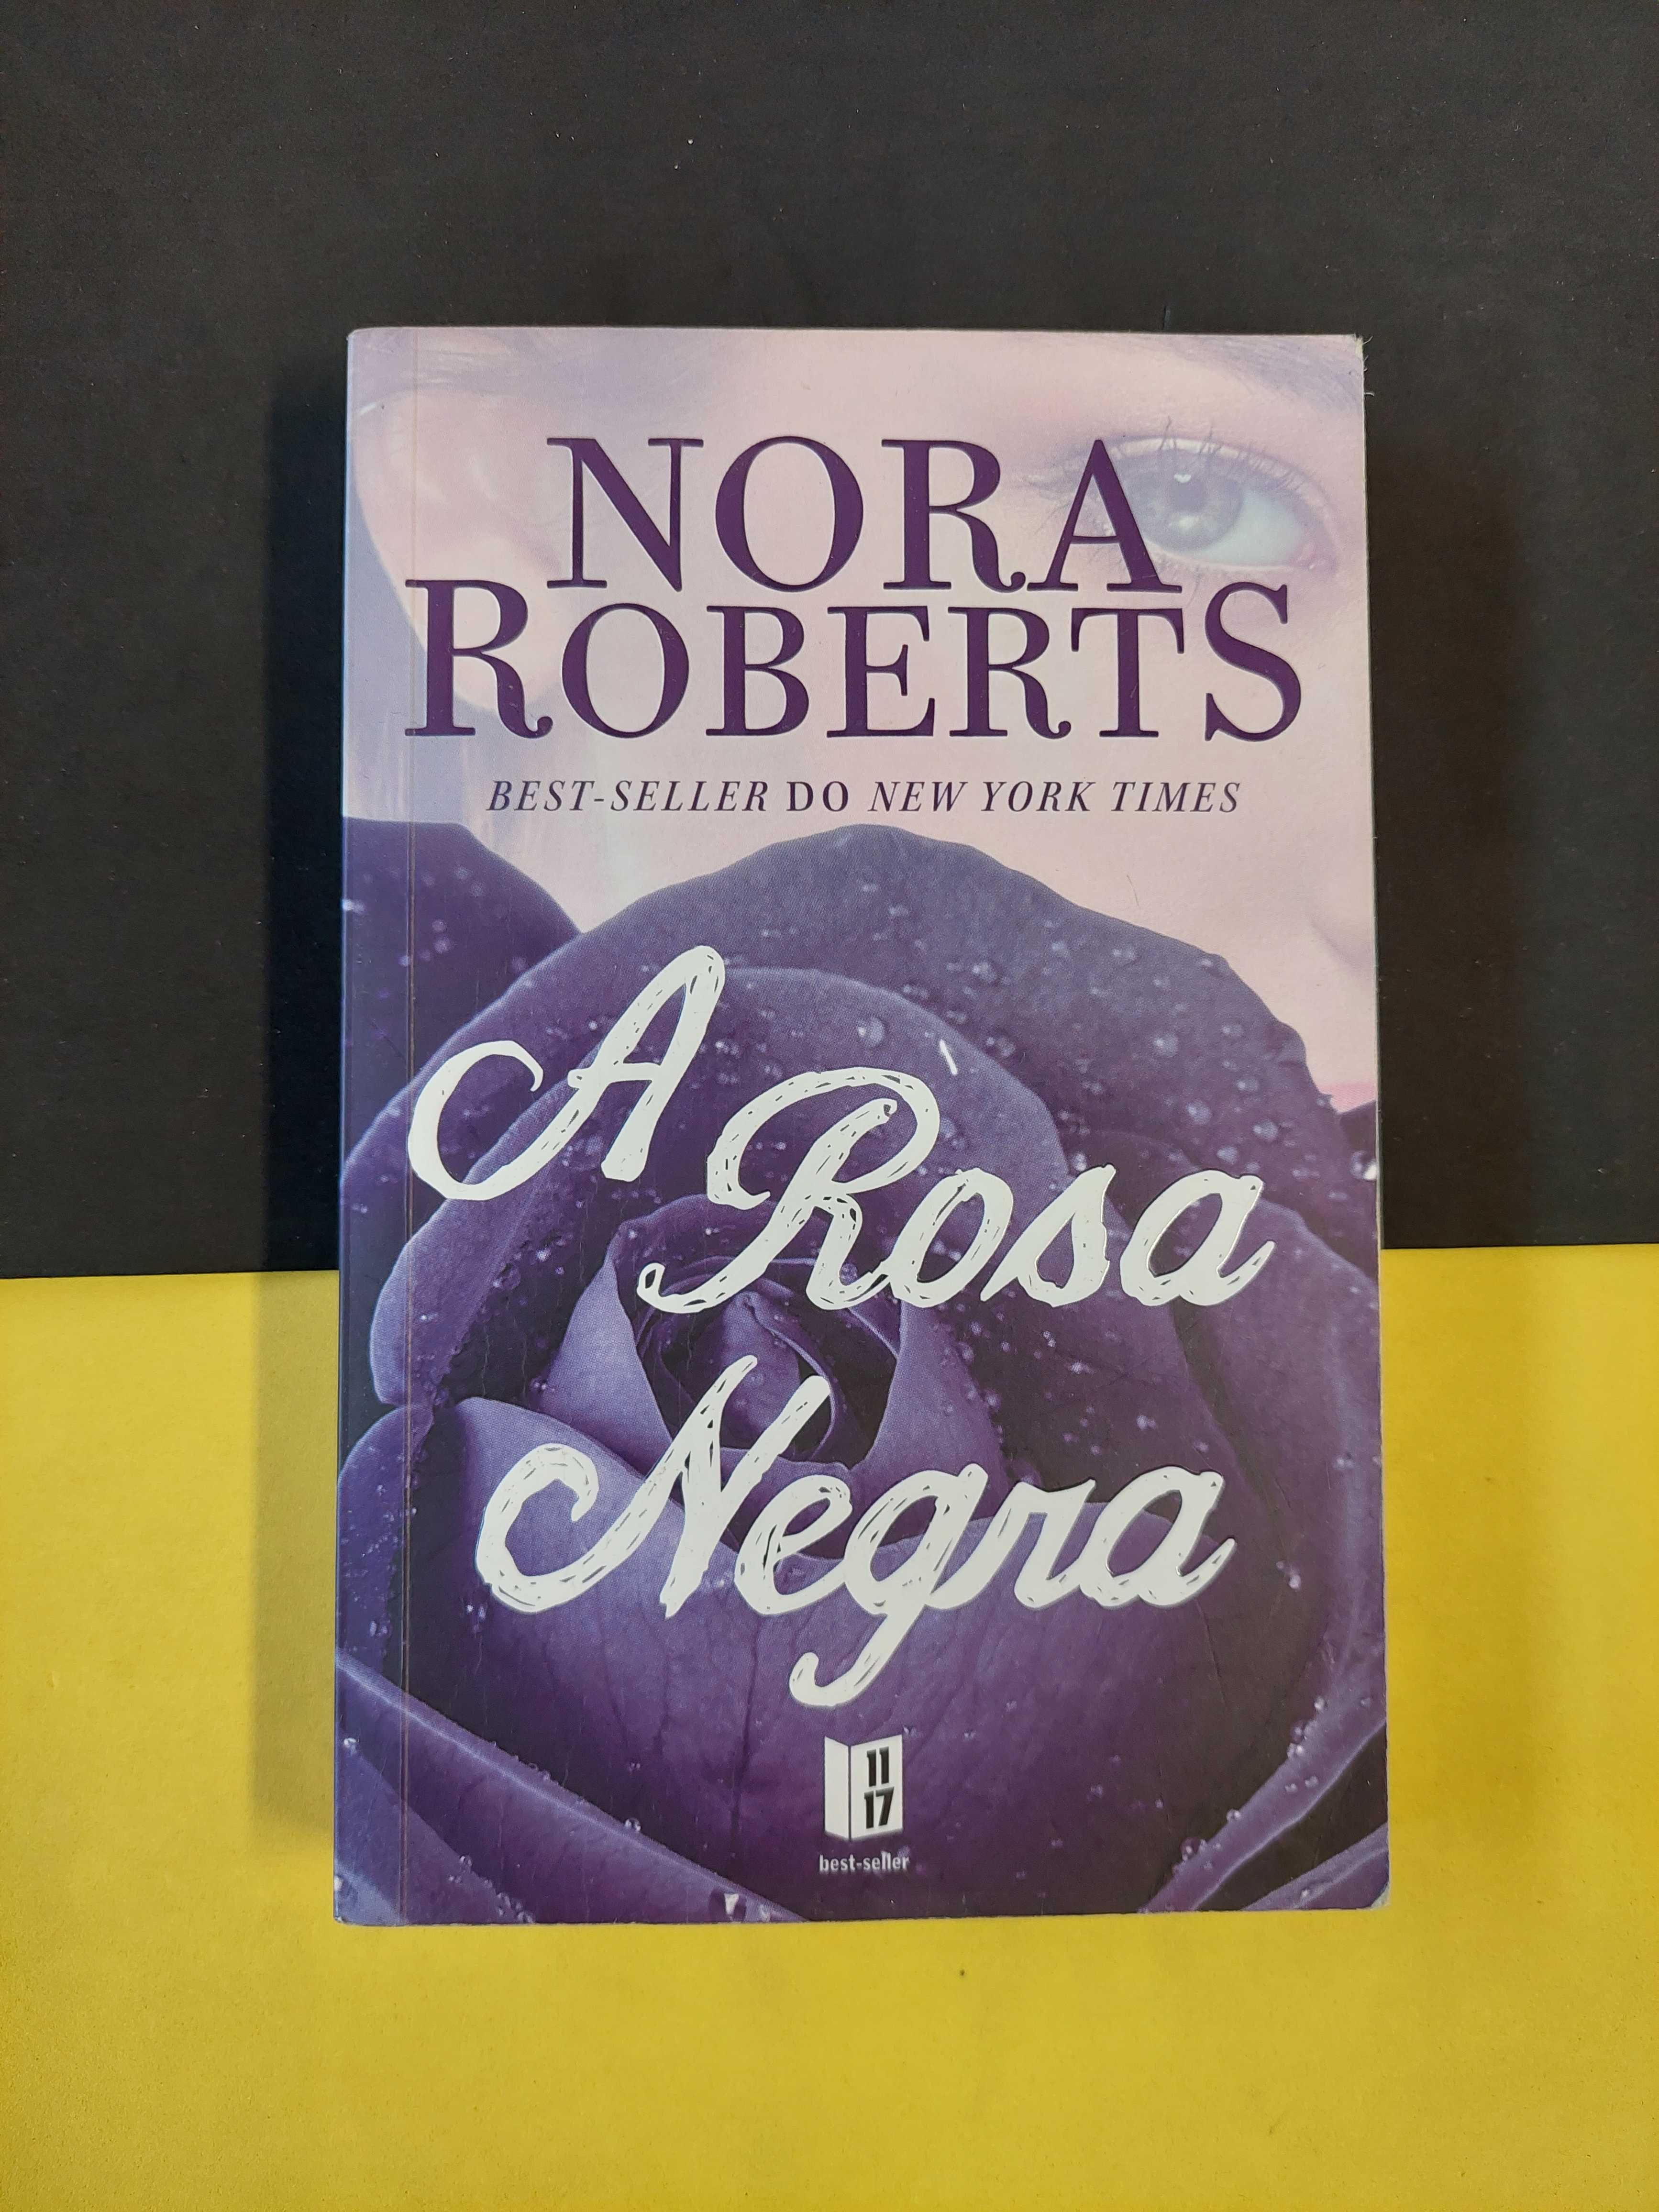 Nora Roberts - A rosa negra